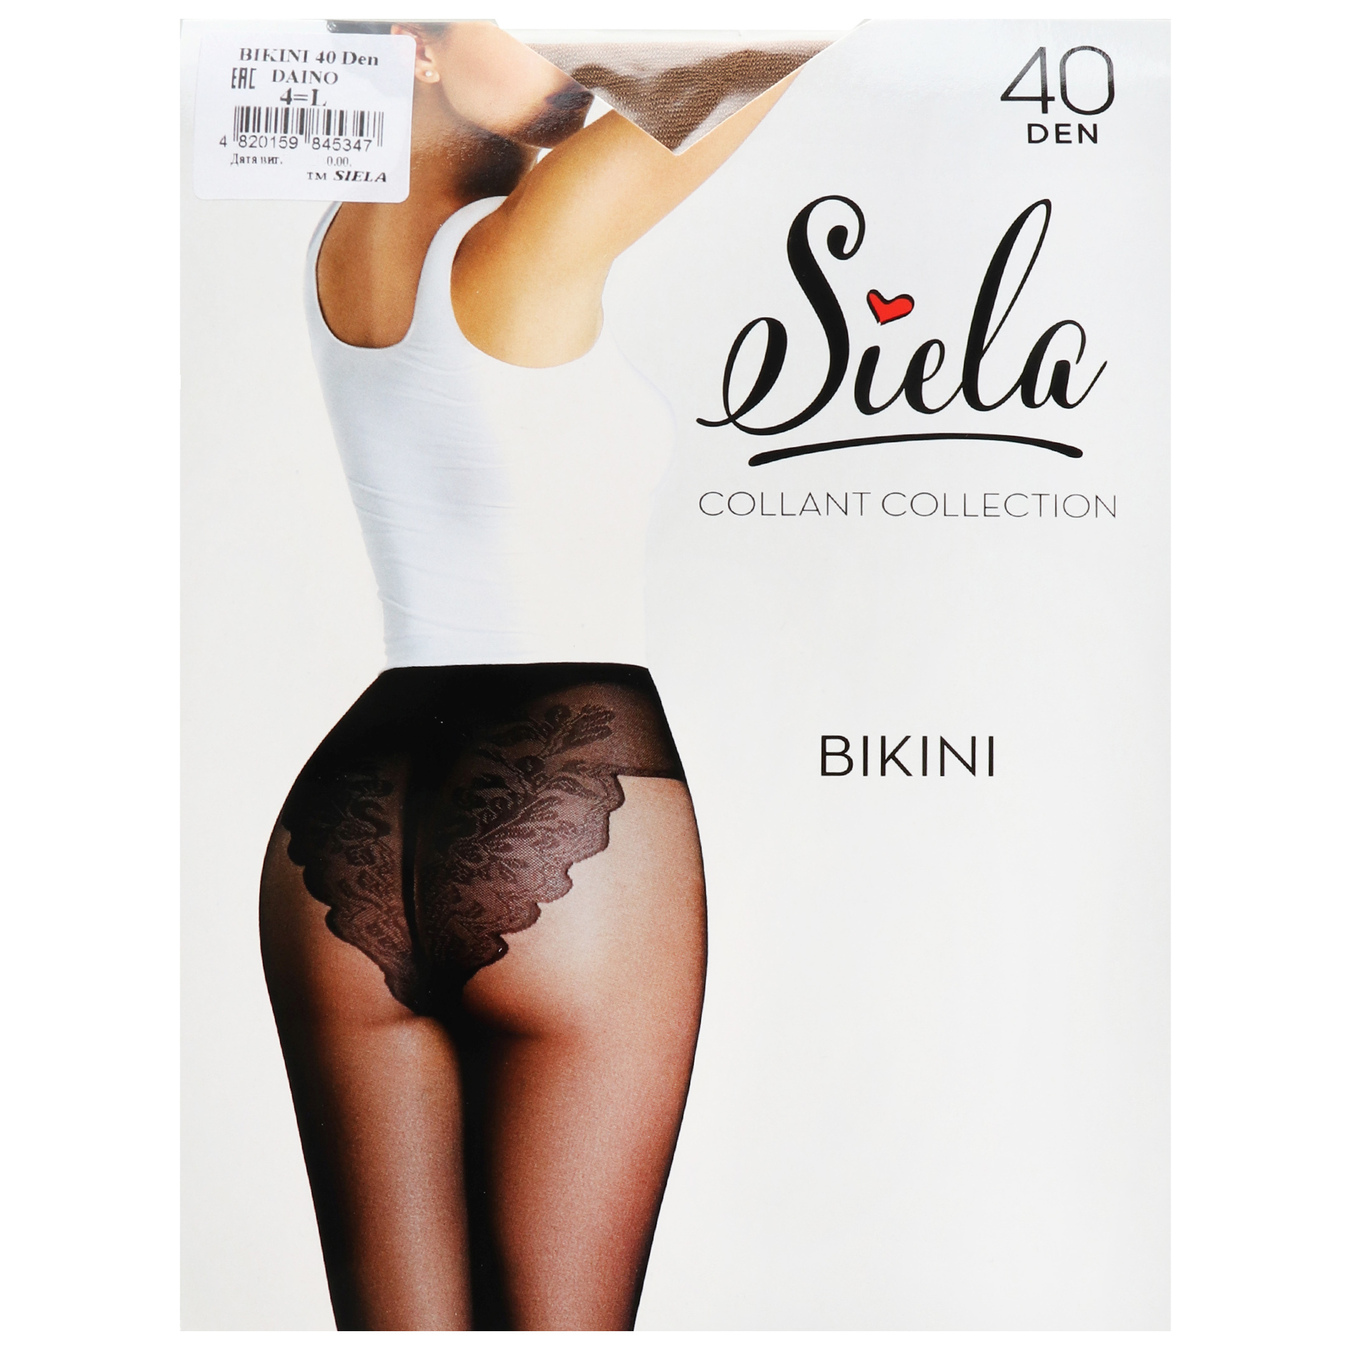 Women's tights Siela Bikini 40 days daino size 4